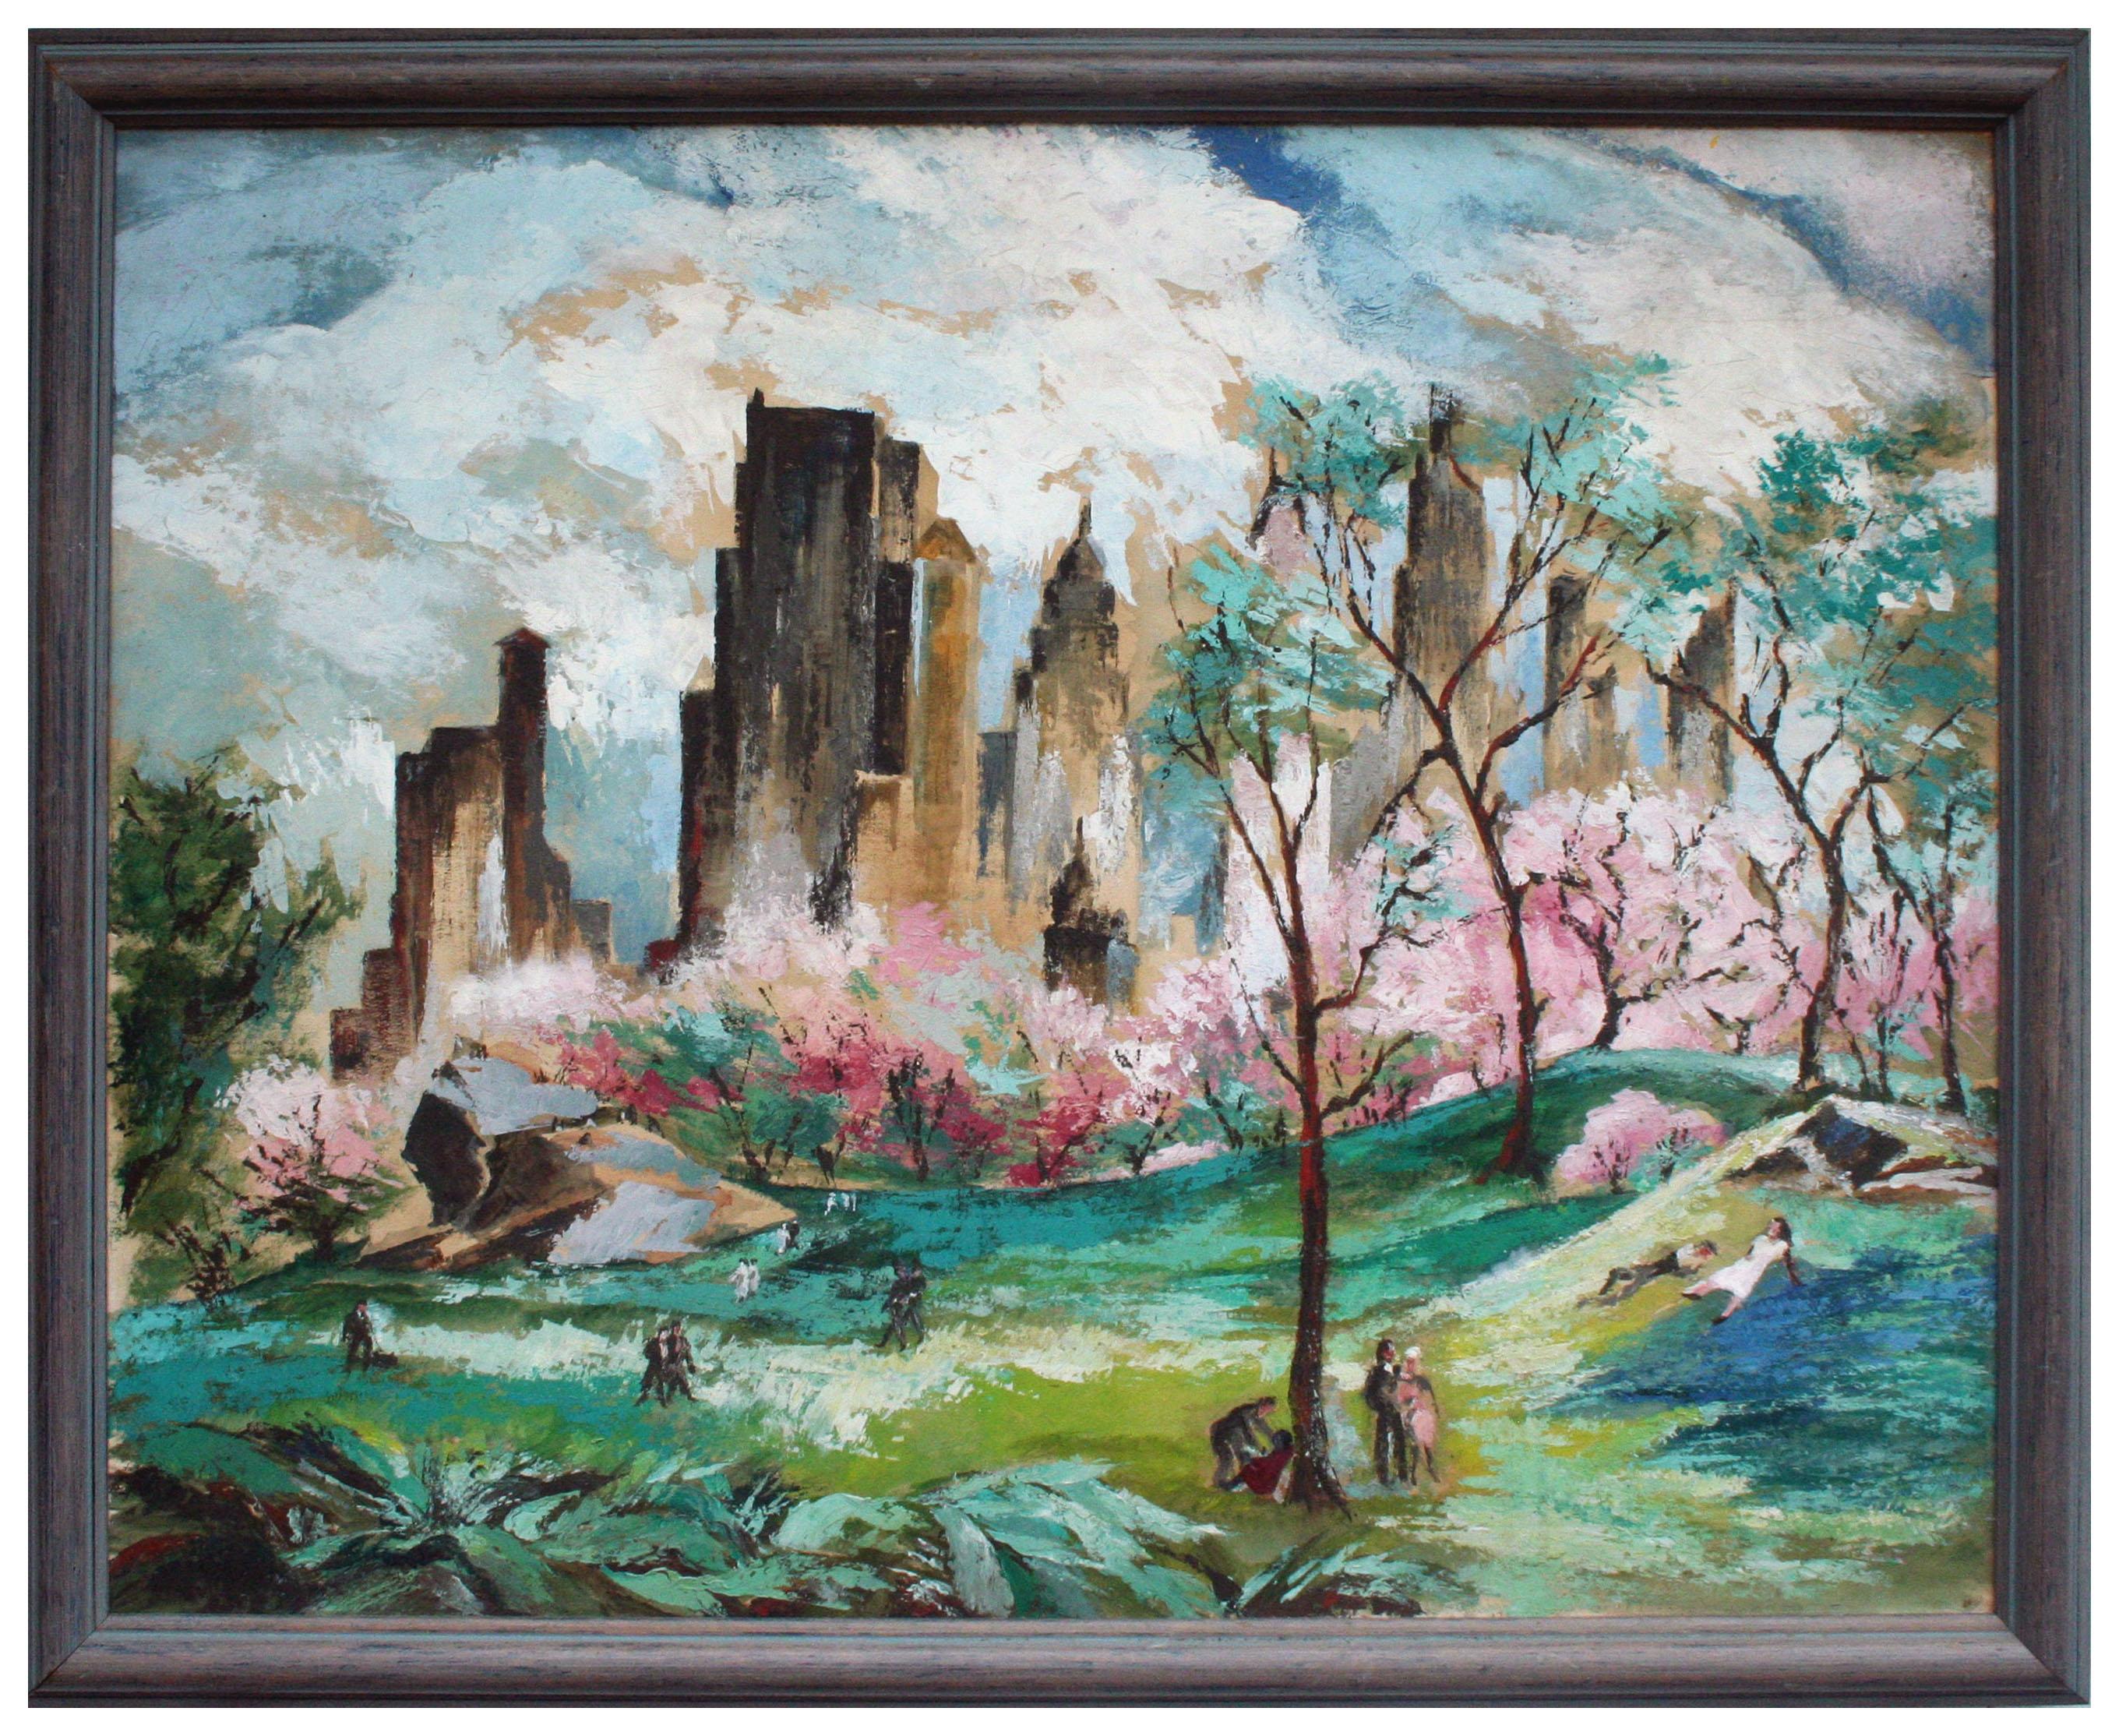 Midcentury Figurative Landscape - After Adolf Dehn's "Spring in Central Park" 